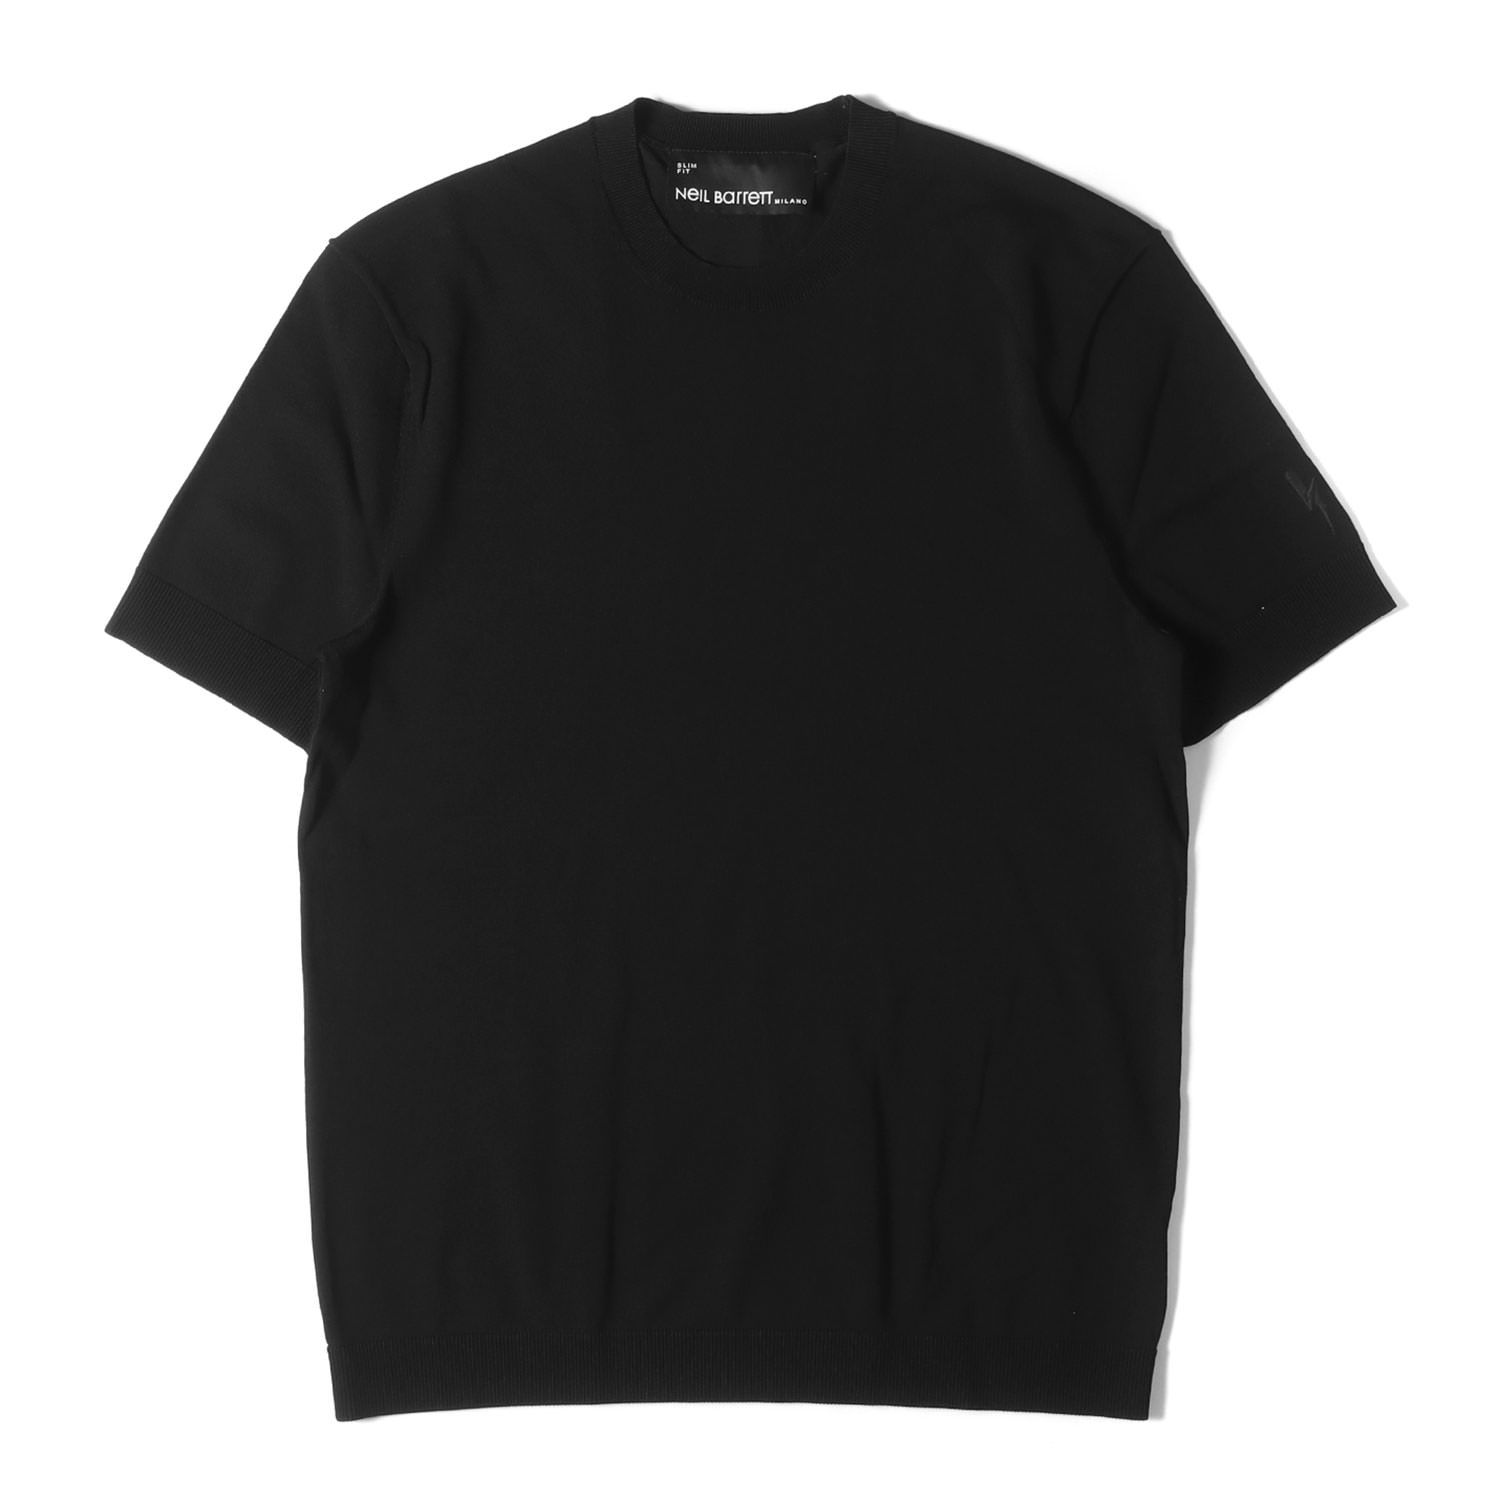 美品 Neil Barrett ニールバレット Tシャツ サイズ:S 近年モデル ストレッチ ニット クルーネック Tシャツ 半袖  BMA1063E-C600 ニットソー SLIM FIT ブラック 黒 トップス カットソー シンプル 無地 ブランド